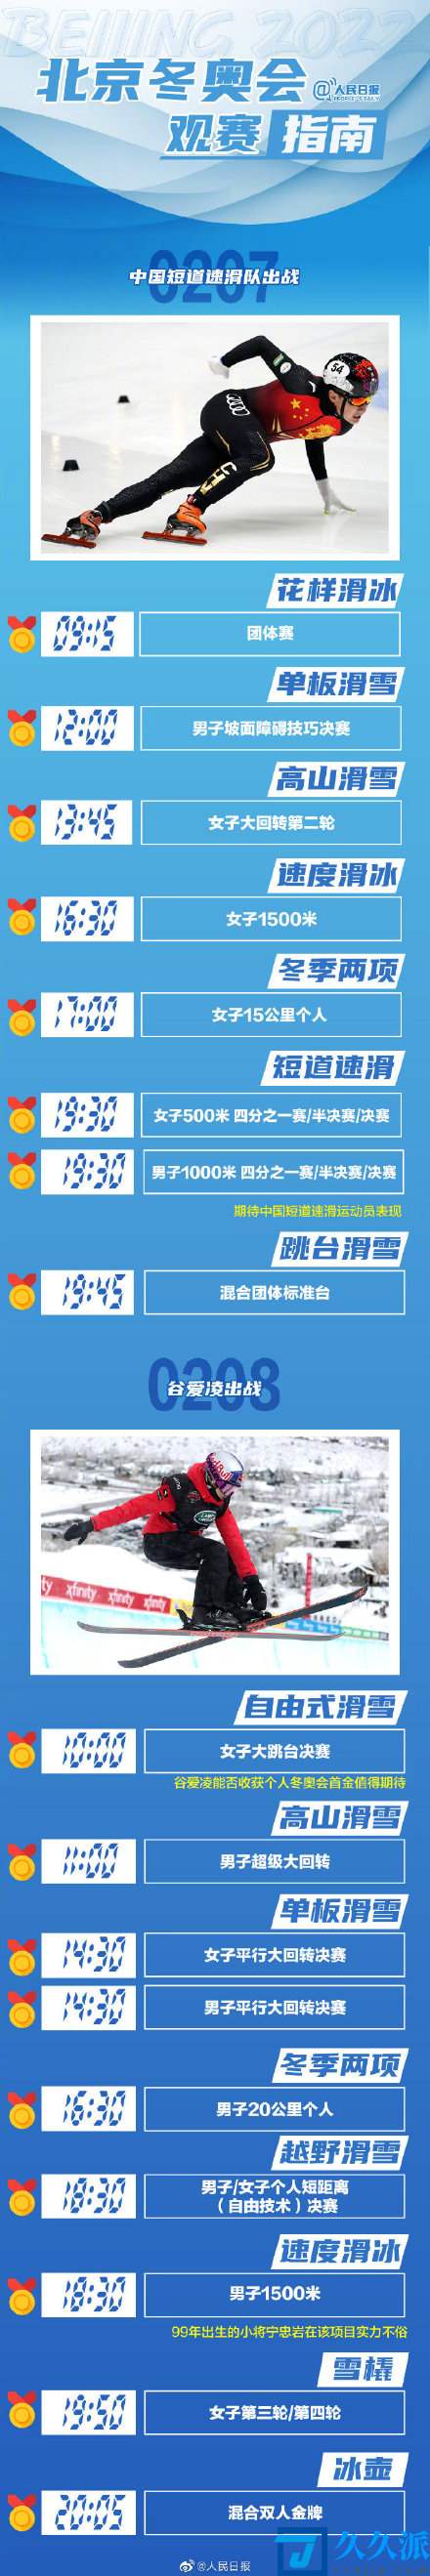 北京2022年冬奥会赛程_北京冬奥会金牌赛事指南